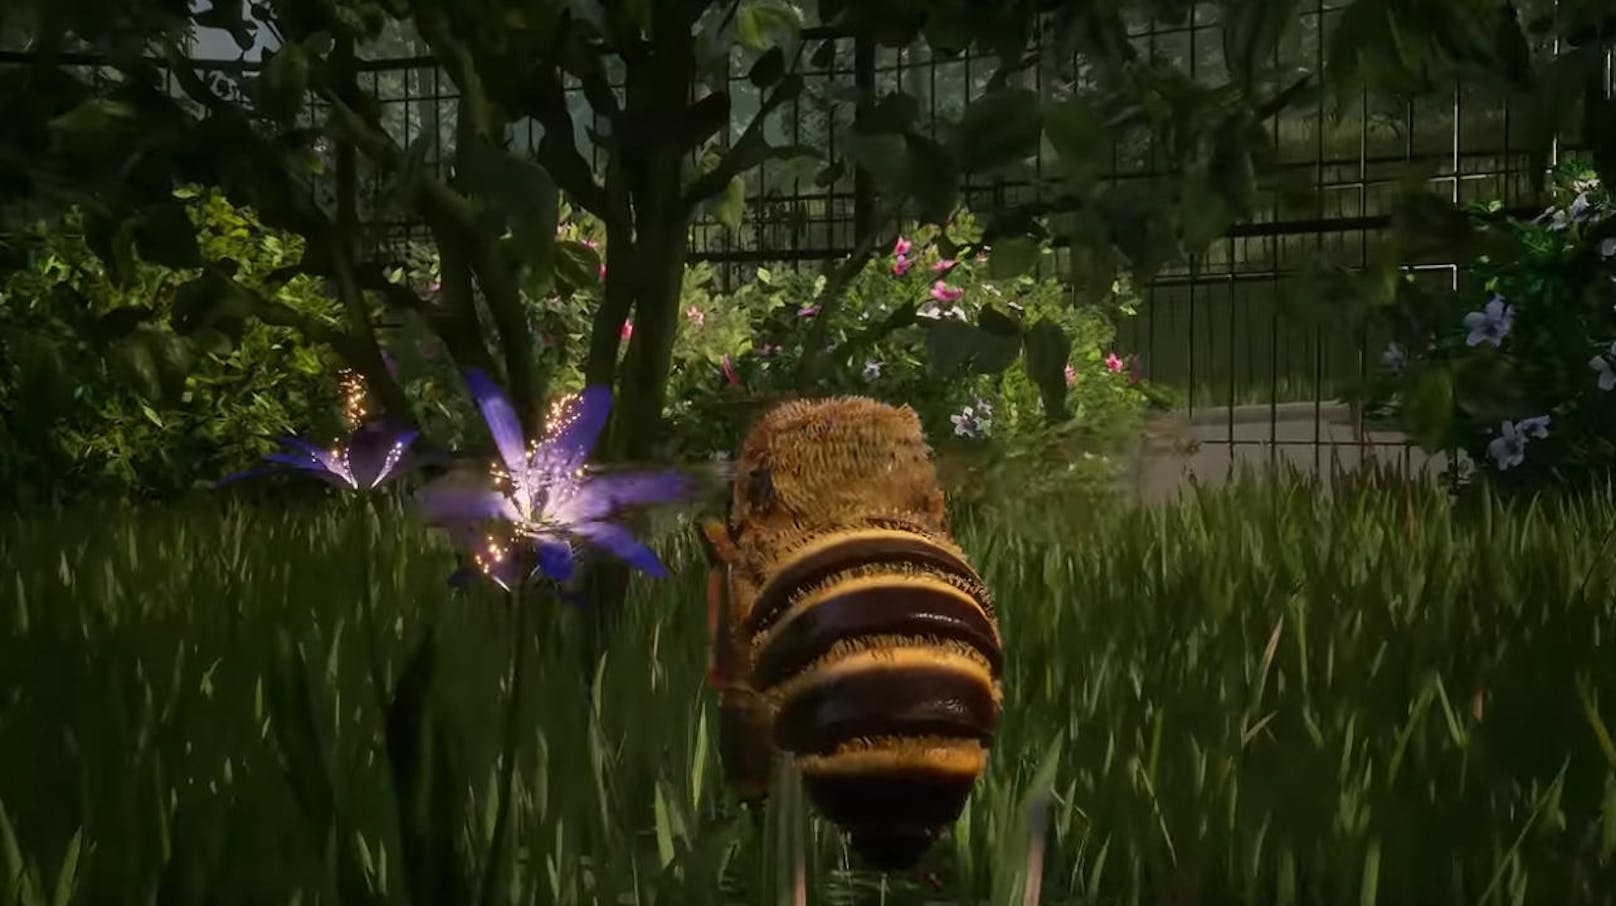 Varsav Game Studios und Bigben freuen sich, die Unterzeichnung einer Vereinbarung für Publishing und Vertrieb von Bee Simulator bekannt zu geben. Der Titel wird Ende 2019 auf Konsolen und PC erscheinen. In Bee Simulator wechseln Spieler die Perspektive und schlüpfen in die Rolle einer Biene, sammeln Pollen und interagieren mit anderen Bienen, der Königin sowie anderen Tierarten. Sie können nach Belieben den Honey Park, eine vom Central Park inspirierte Welt, erkunden, während sie durch Haupt- und Sekundärmissionen zu der Biene werden, die ihren Schwarm retten kann. <a href="https://www.youtube.com/watch?v=NSEQIvAgH9o">Trailer ansehen!</a>